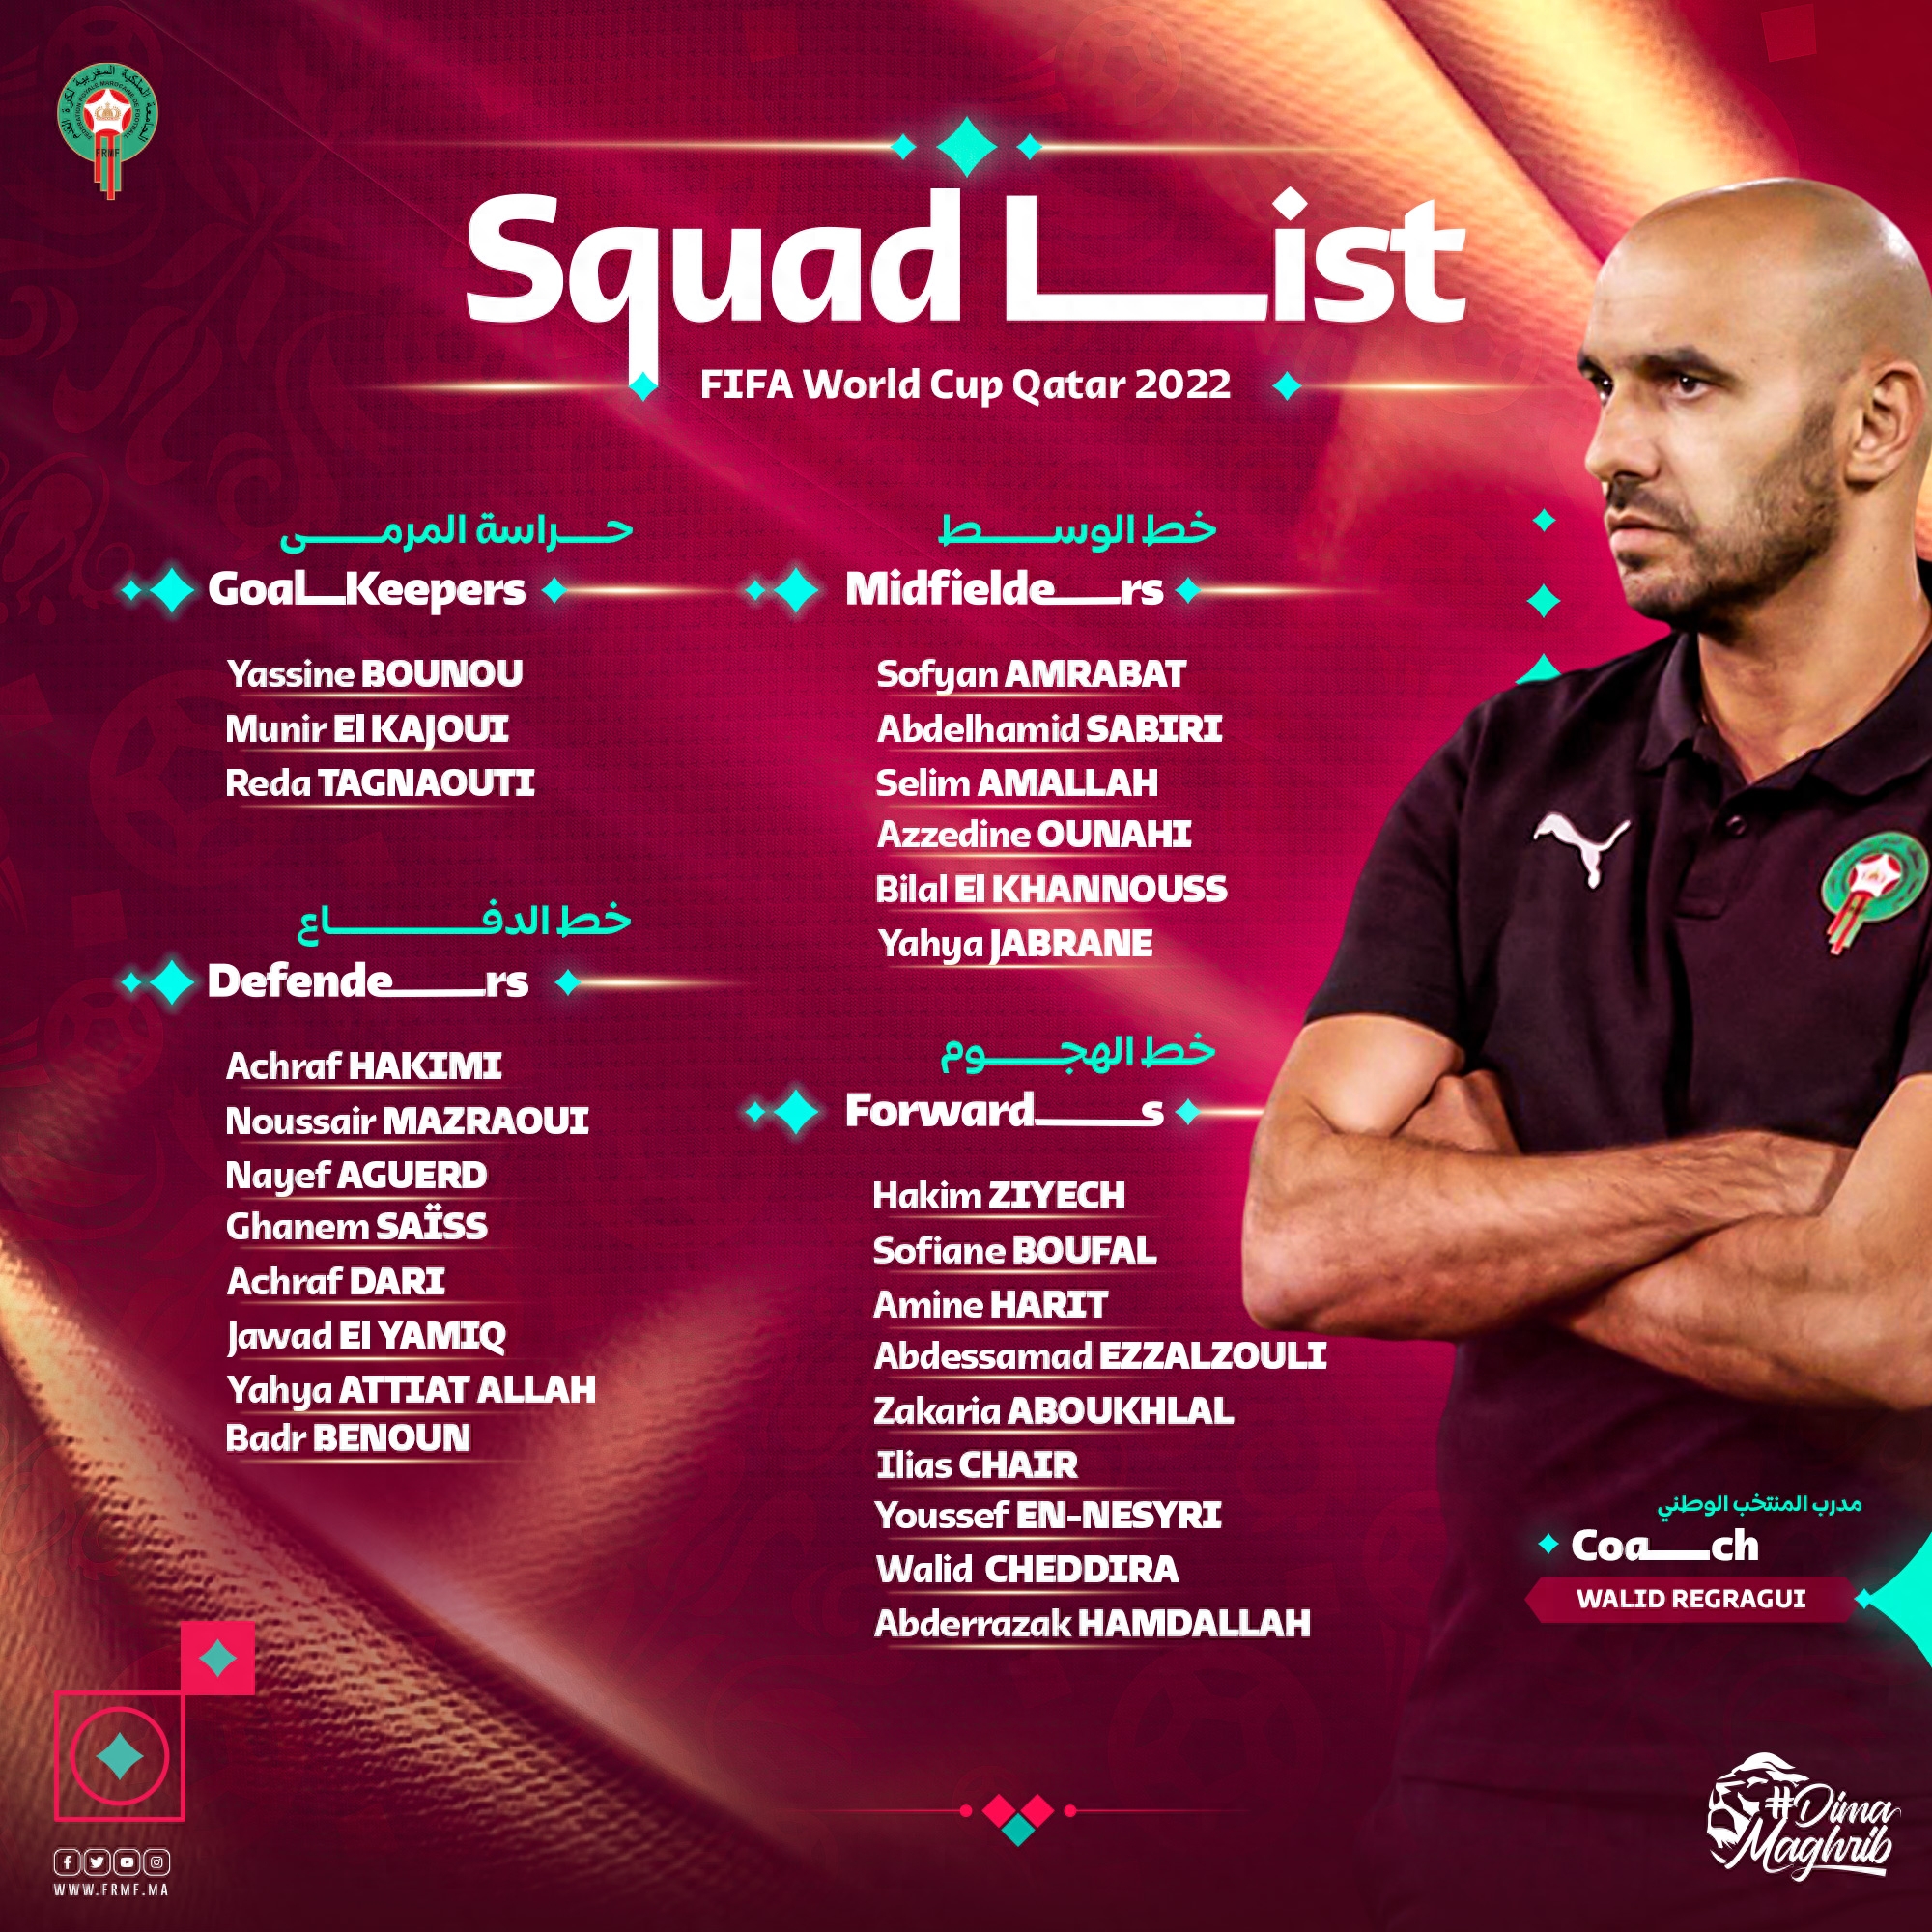 摩洛哥足球队员名单成员,队长叫什么,世界排名第几